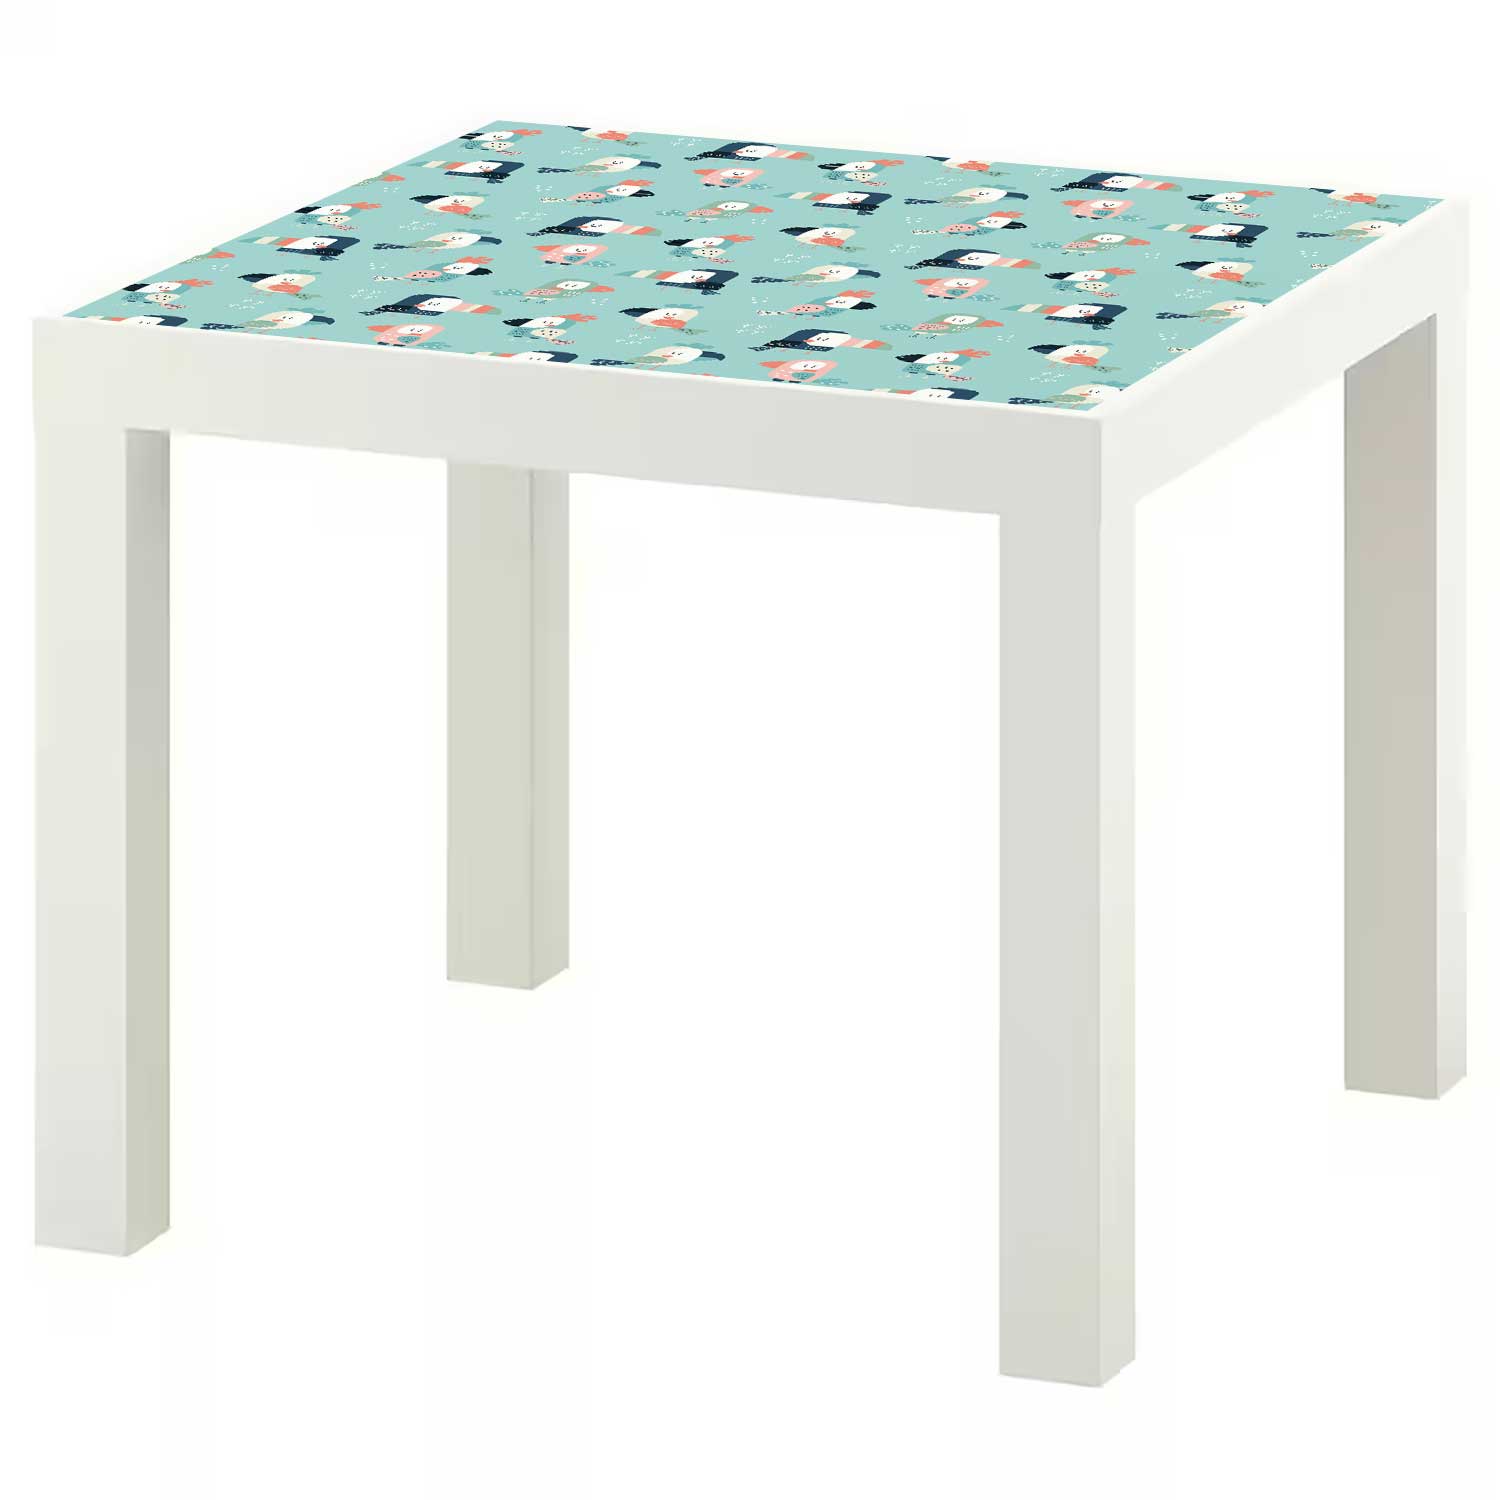 Möbelfolie Kinder für IKEA Lack Tisch 55x55 cm 'Papagei'